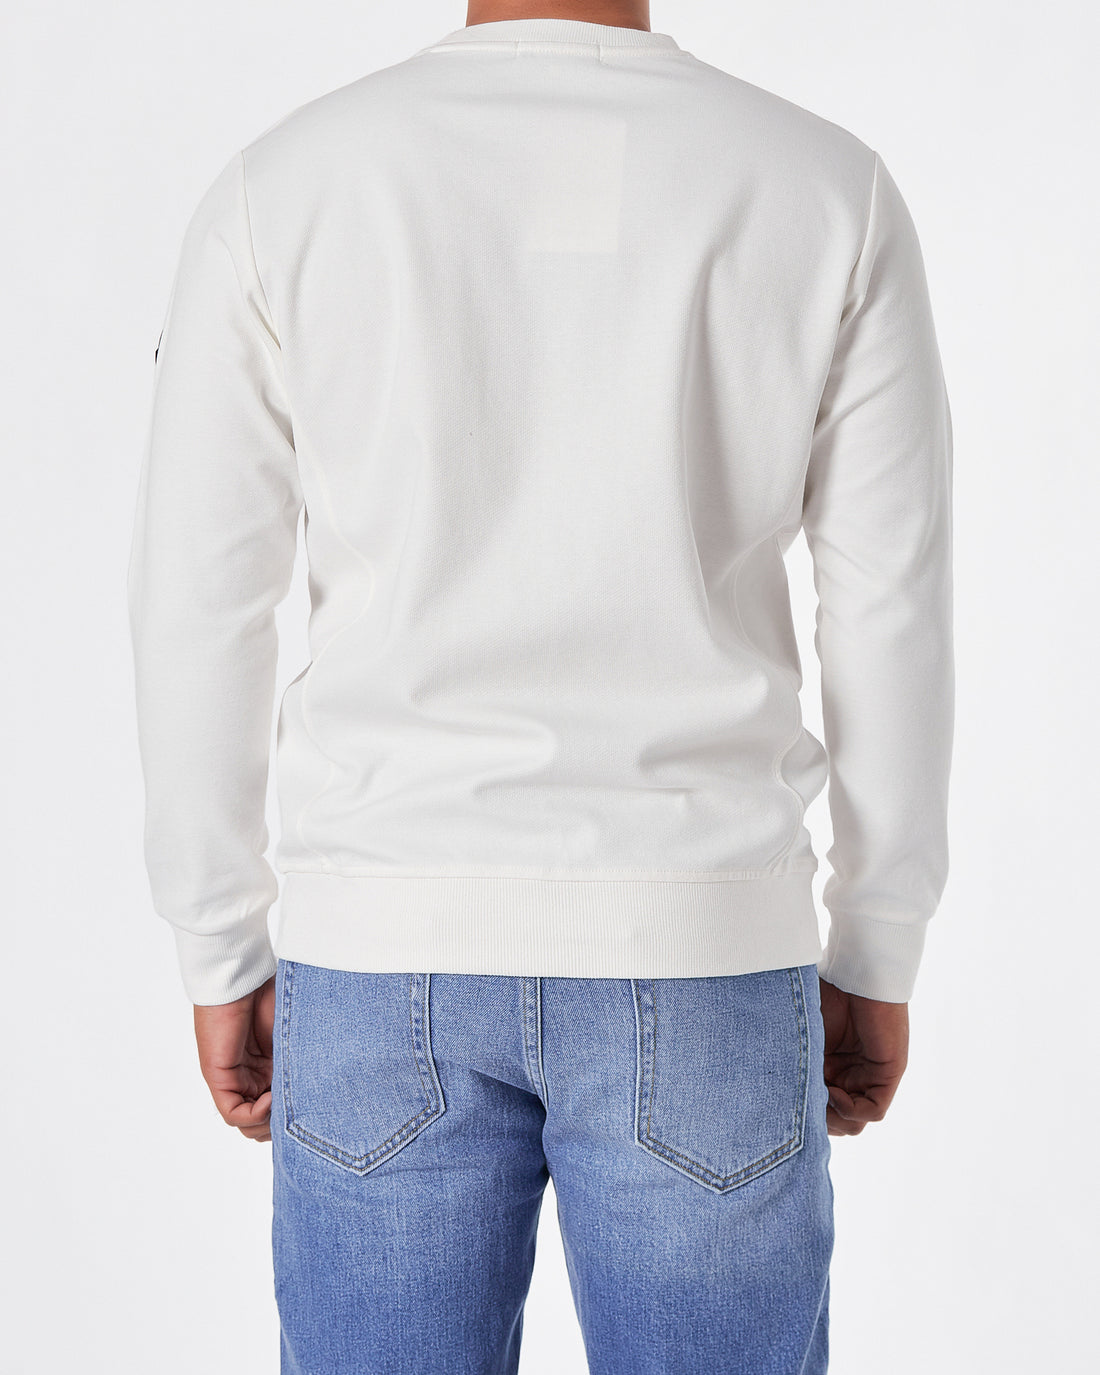 MON Men White Sweater 27.90